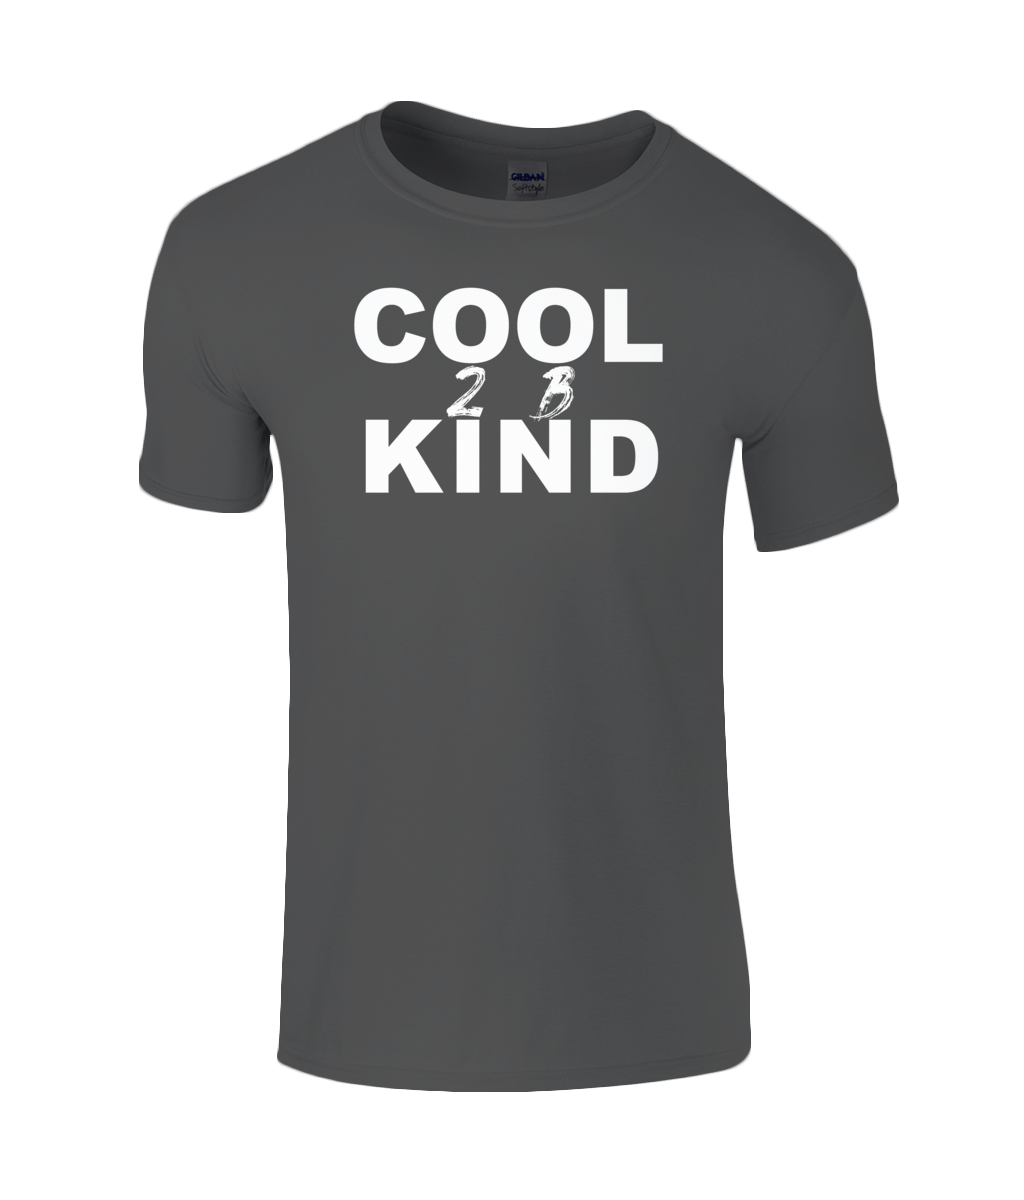 Cool 2 B Kind Kids T-Shirt